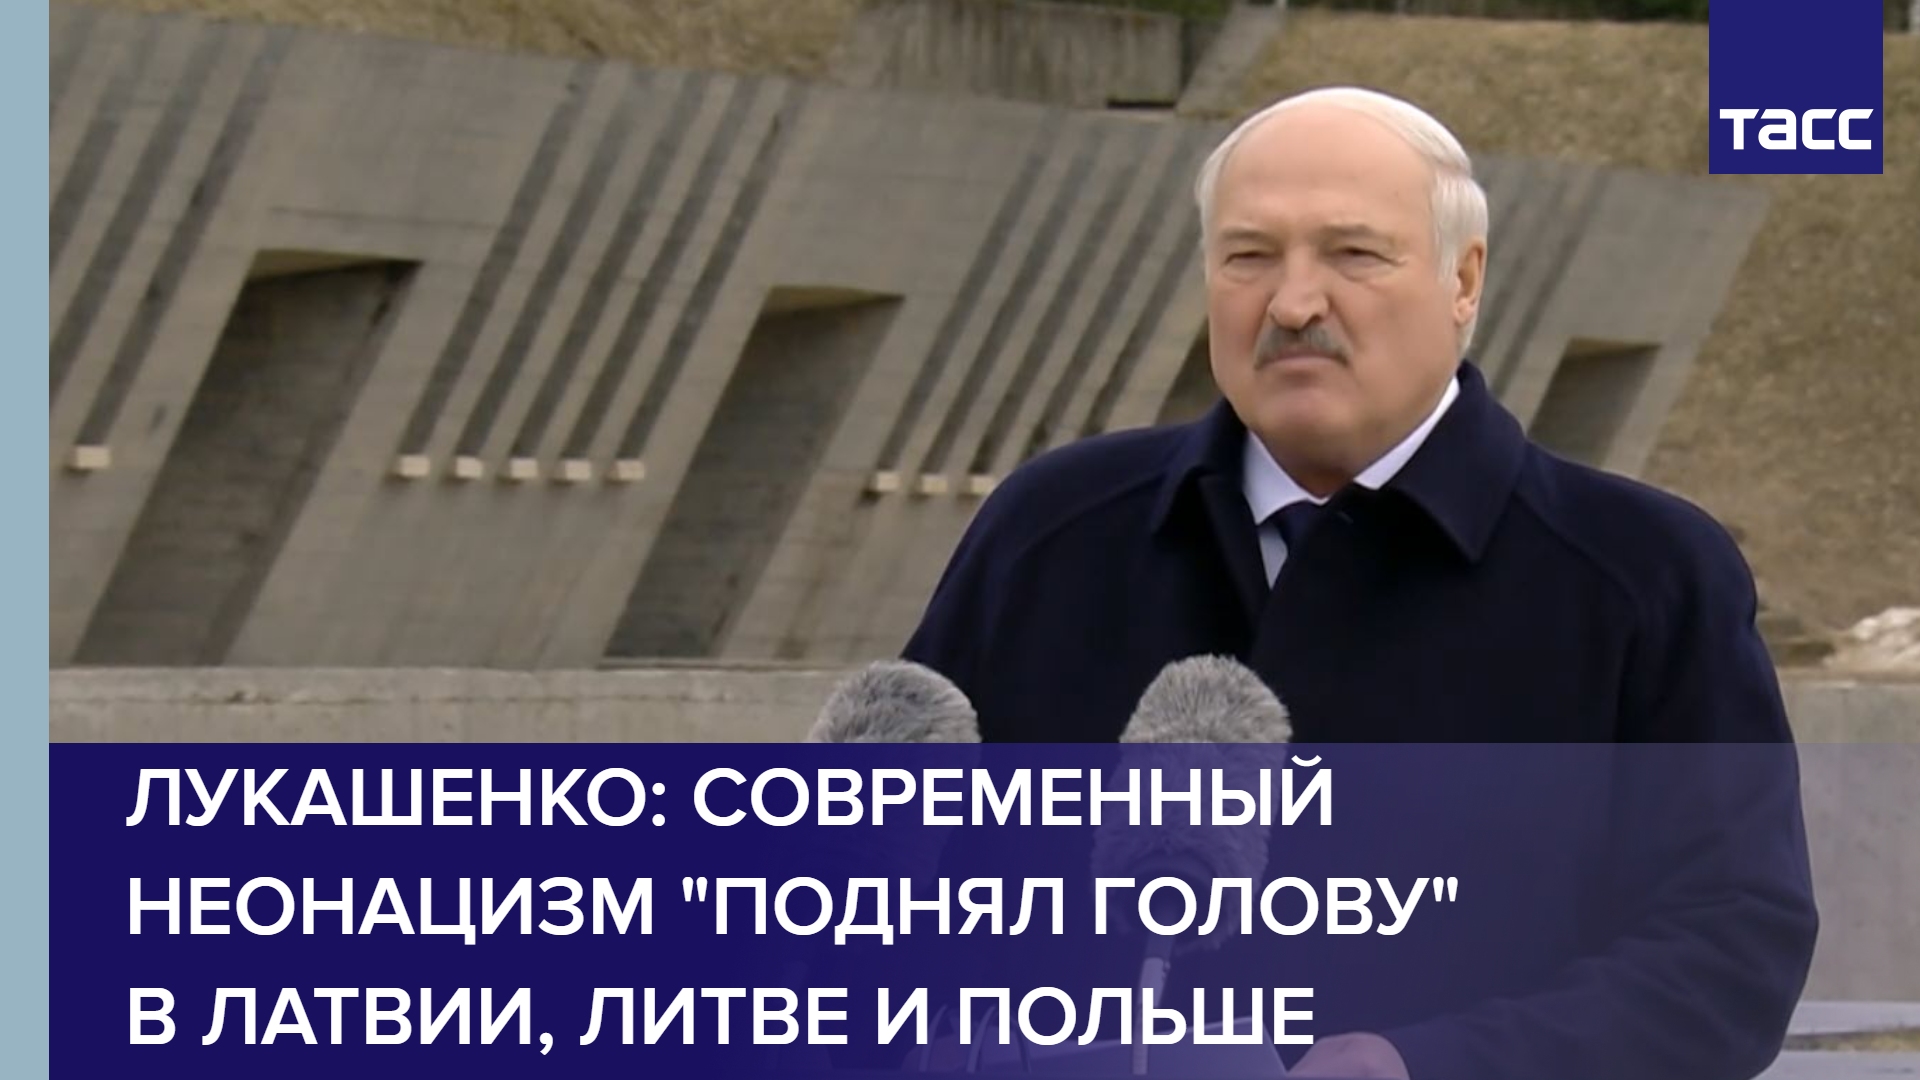 Лукашенко: современный неонацизм "поднял голову" в Латвии, Литве и Польше #shorts